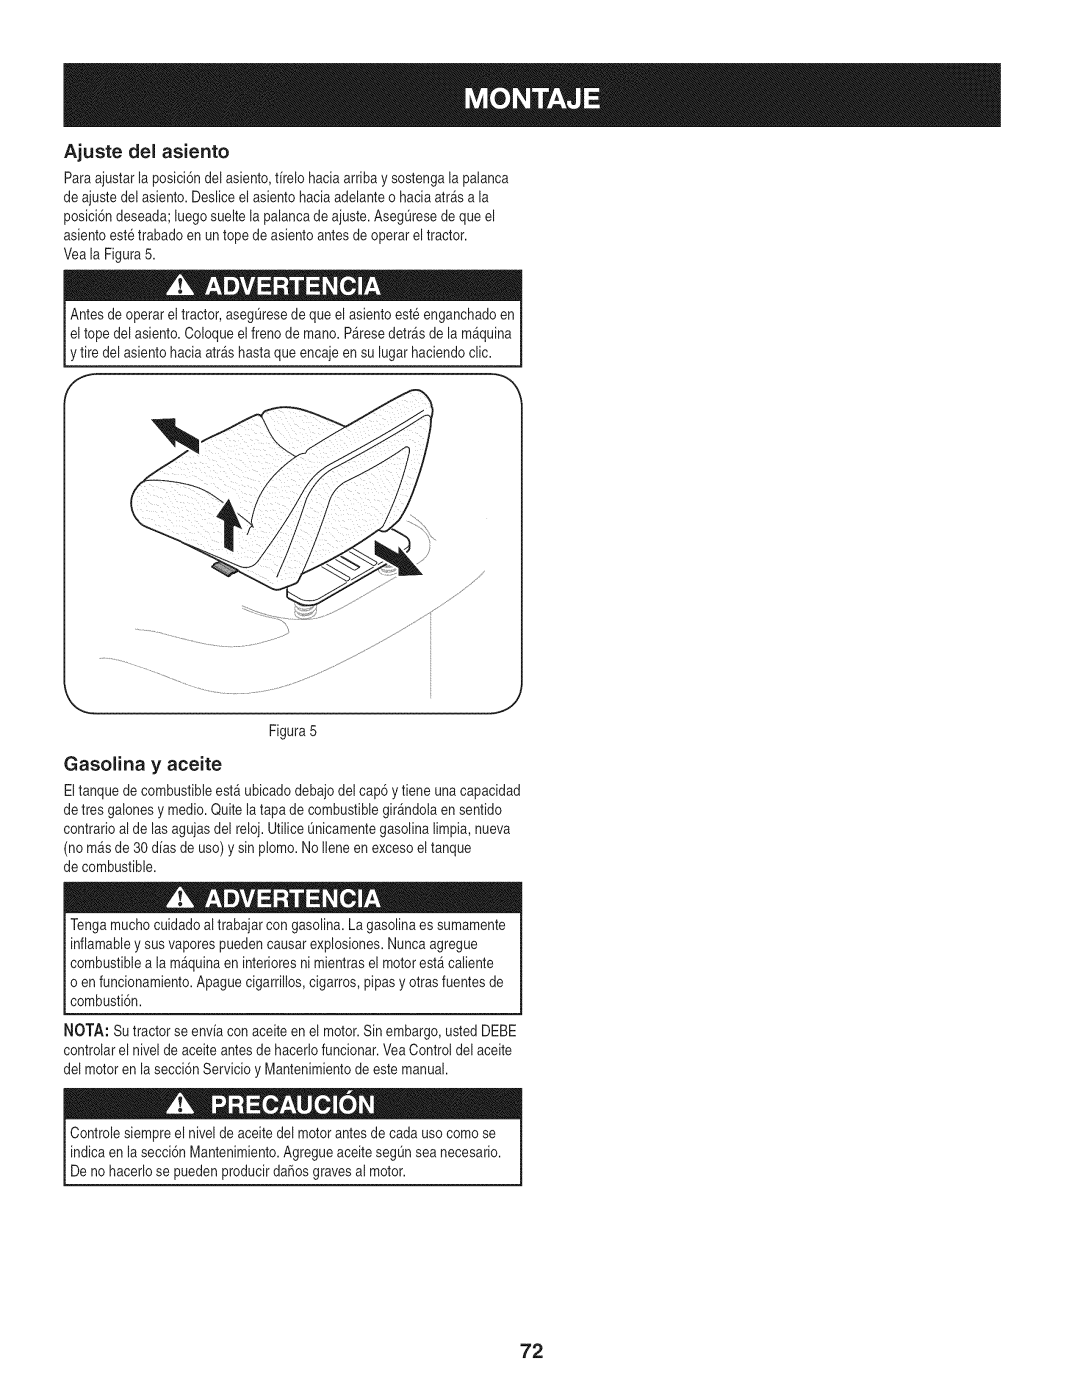 Craftsman PYT 9000, 247.28672 manual Ajuste del asiento, Gasolina y aceite 